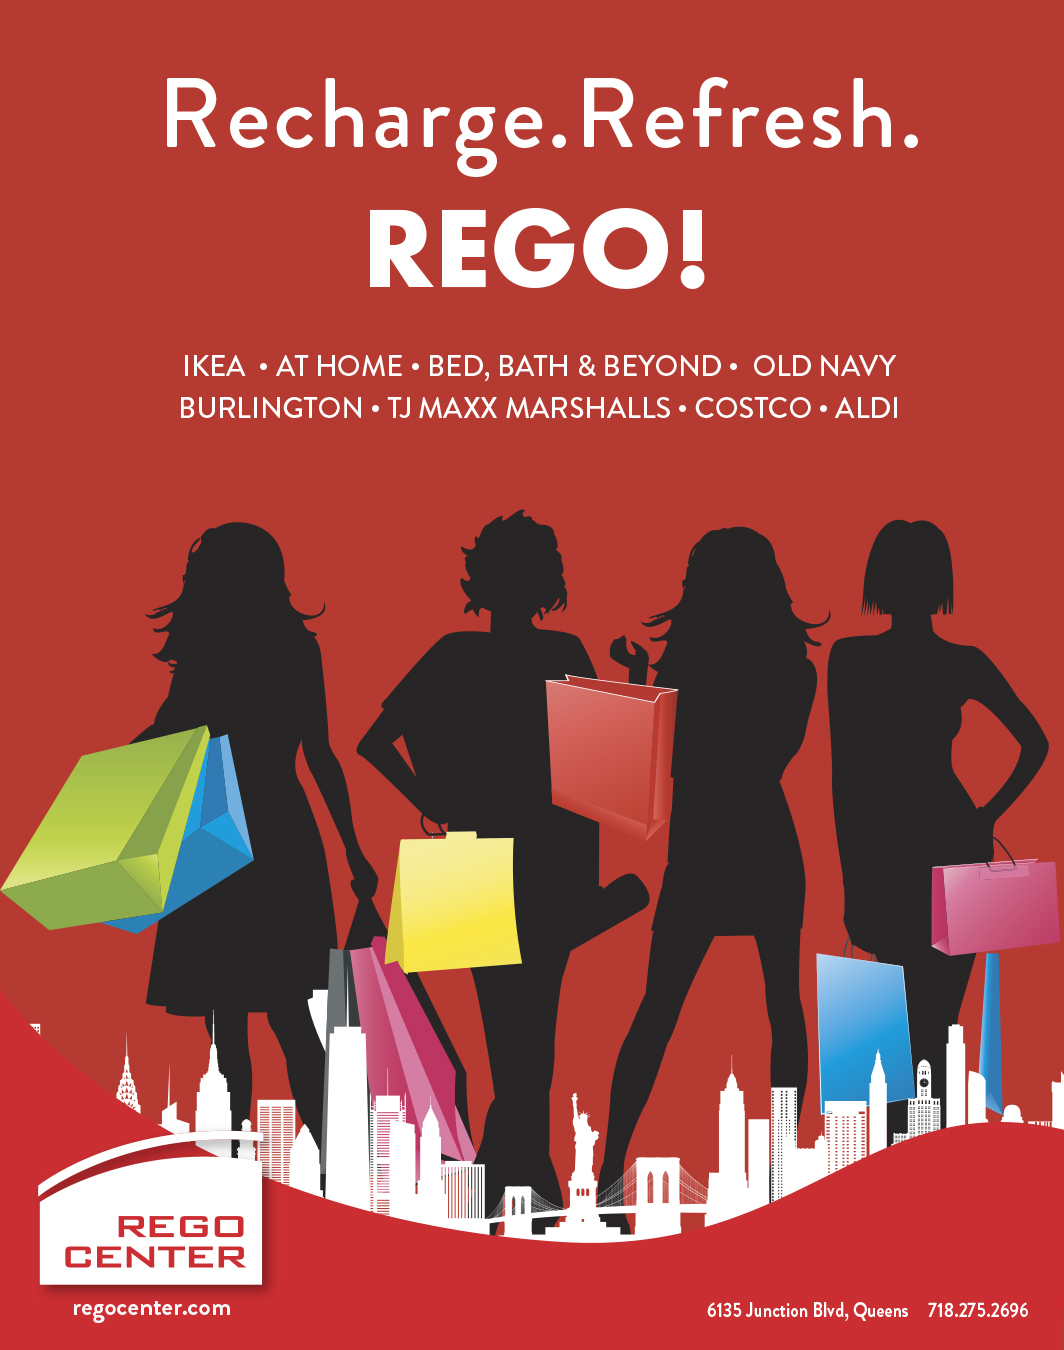 REGO Center - Campaign